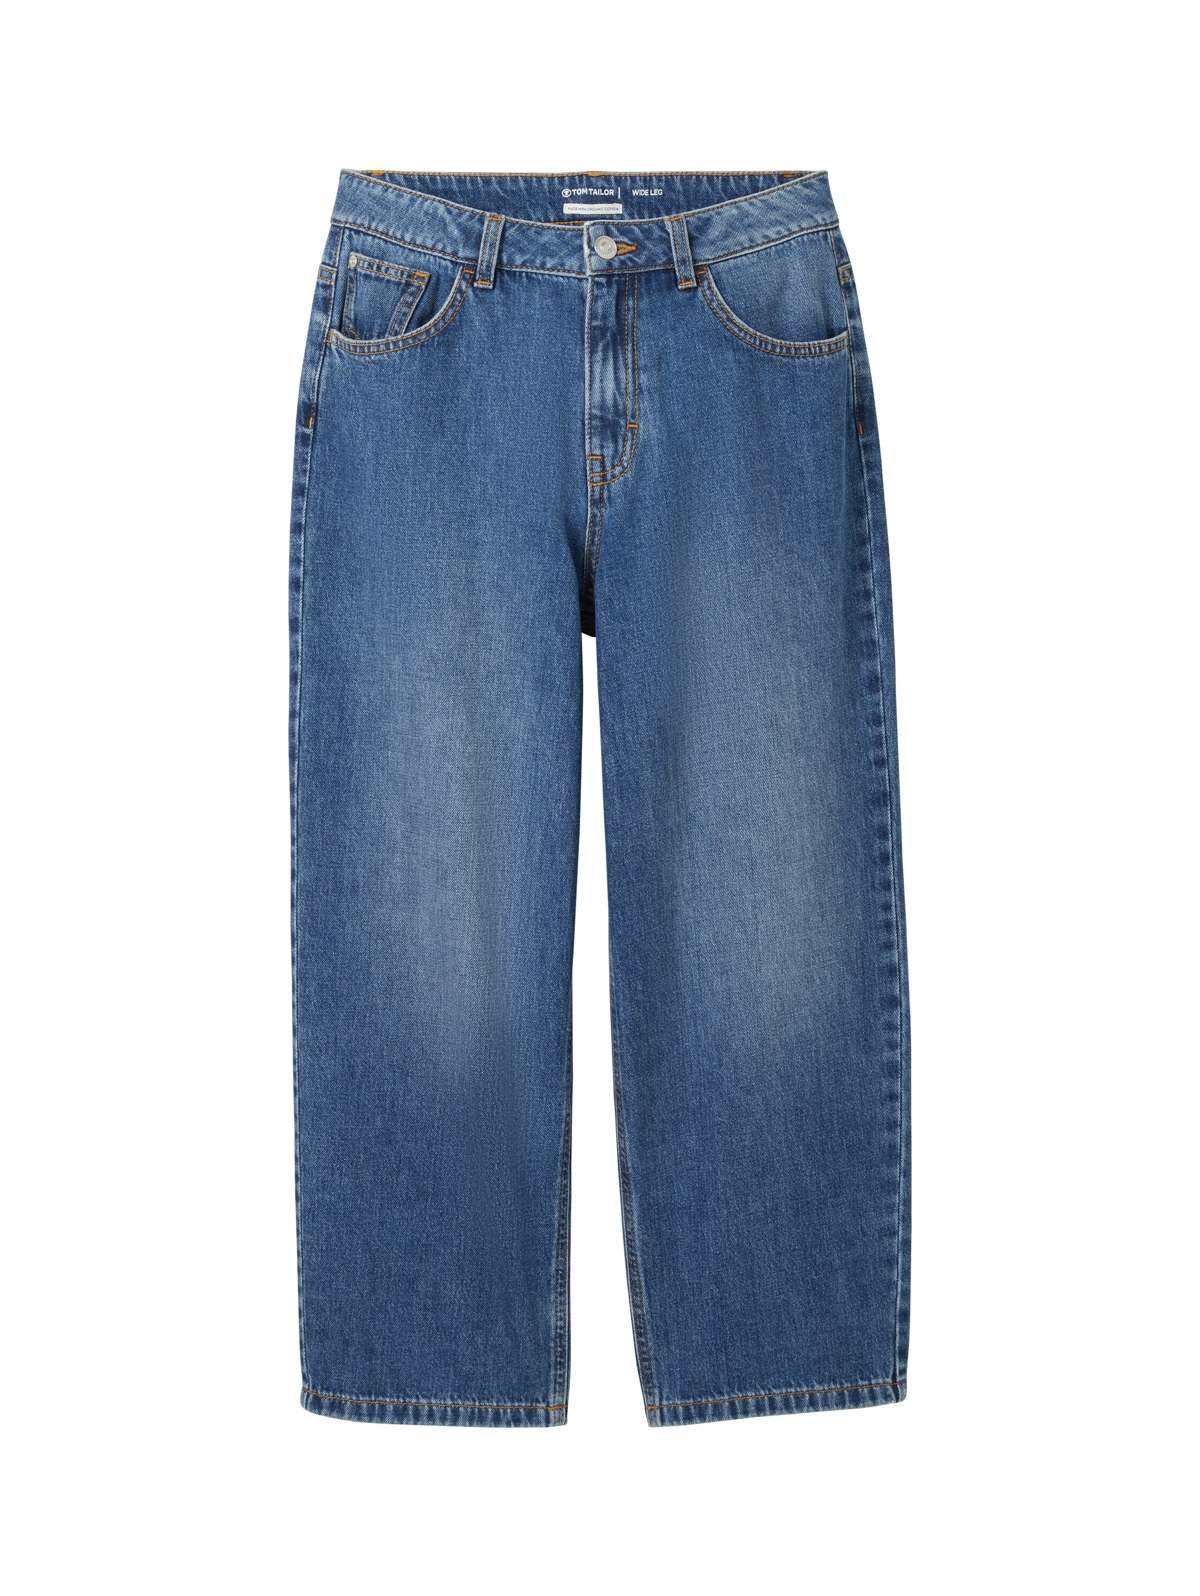 Джинсы с 5 карманами, похожие на мешковатые джинсы с расклешенными штанинами.